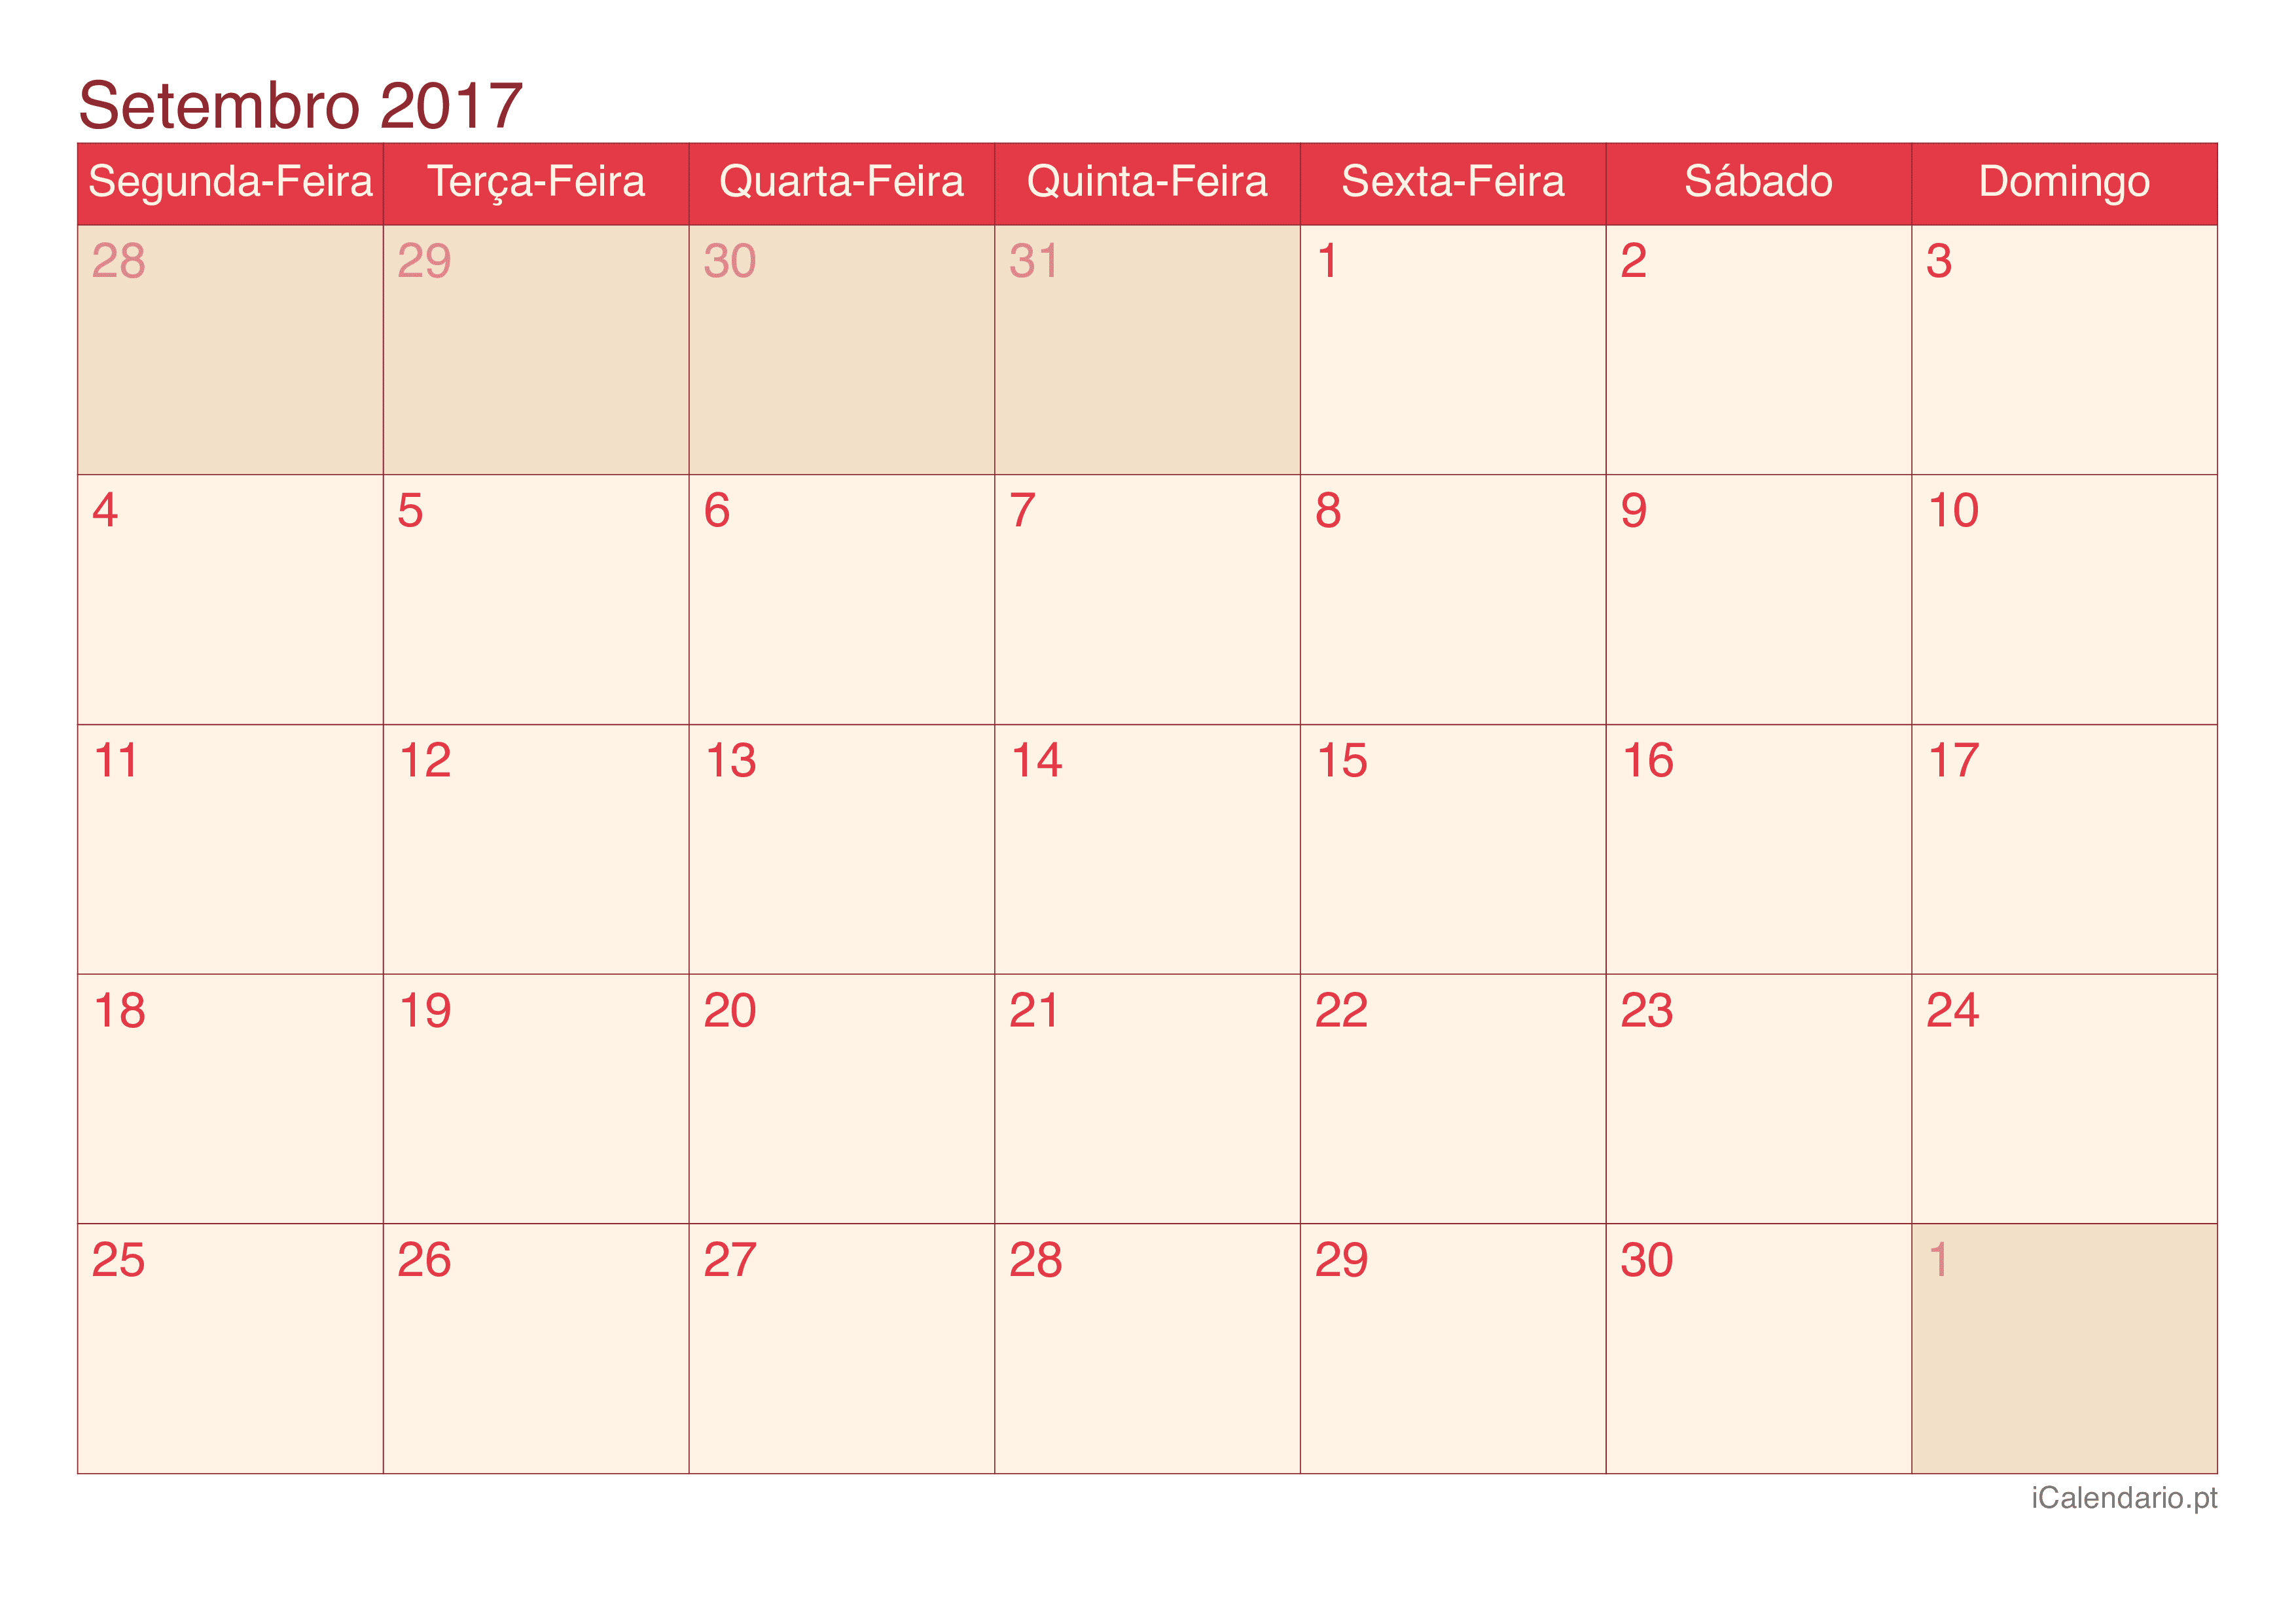 Calendário de setembro 2017 - Cherry